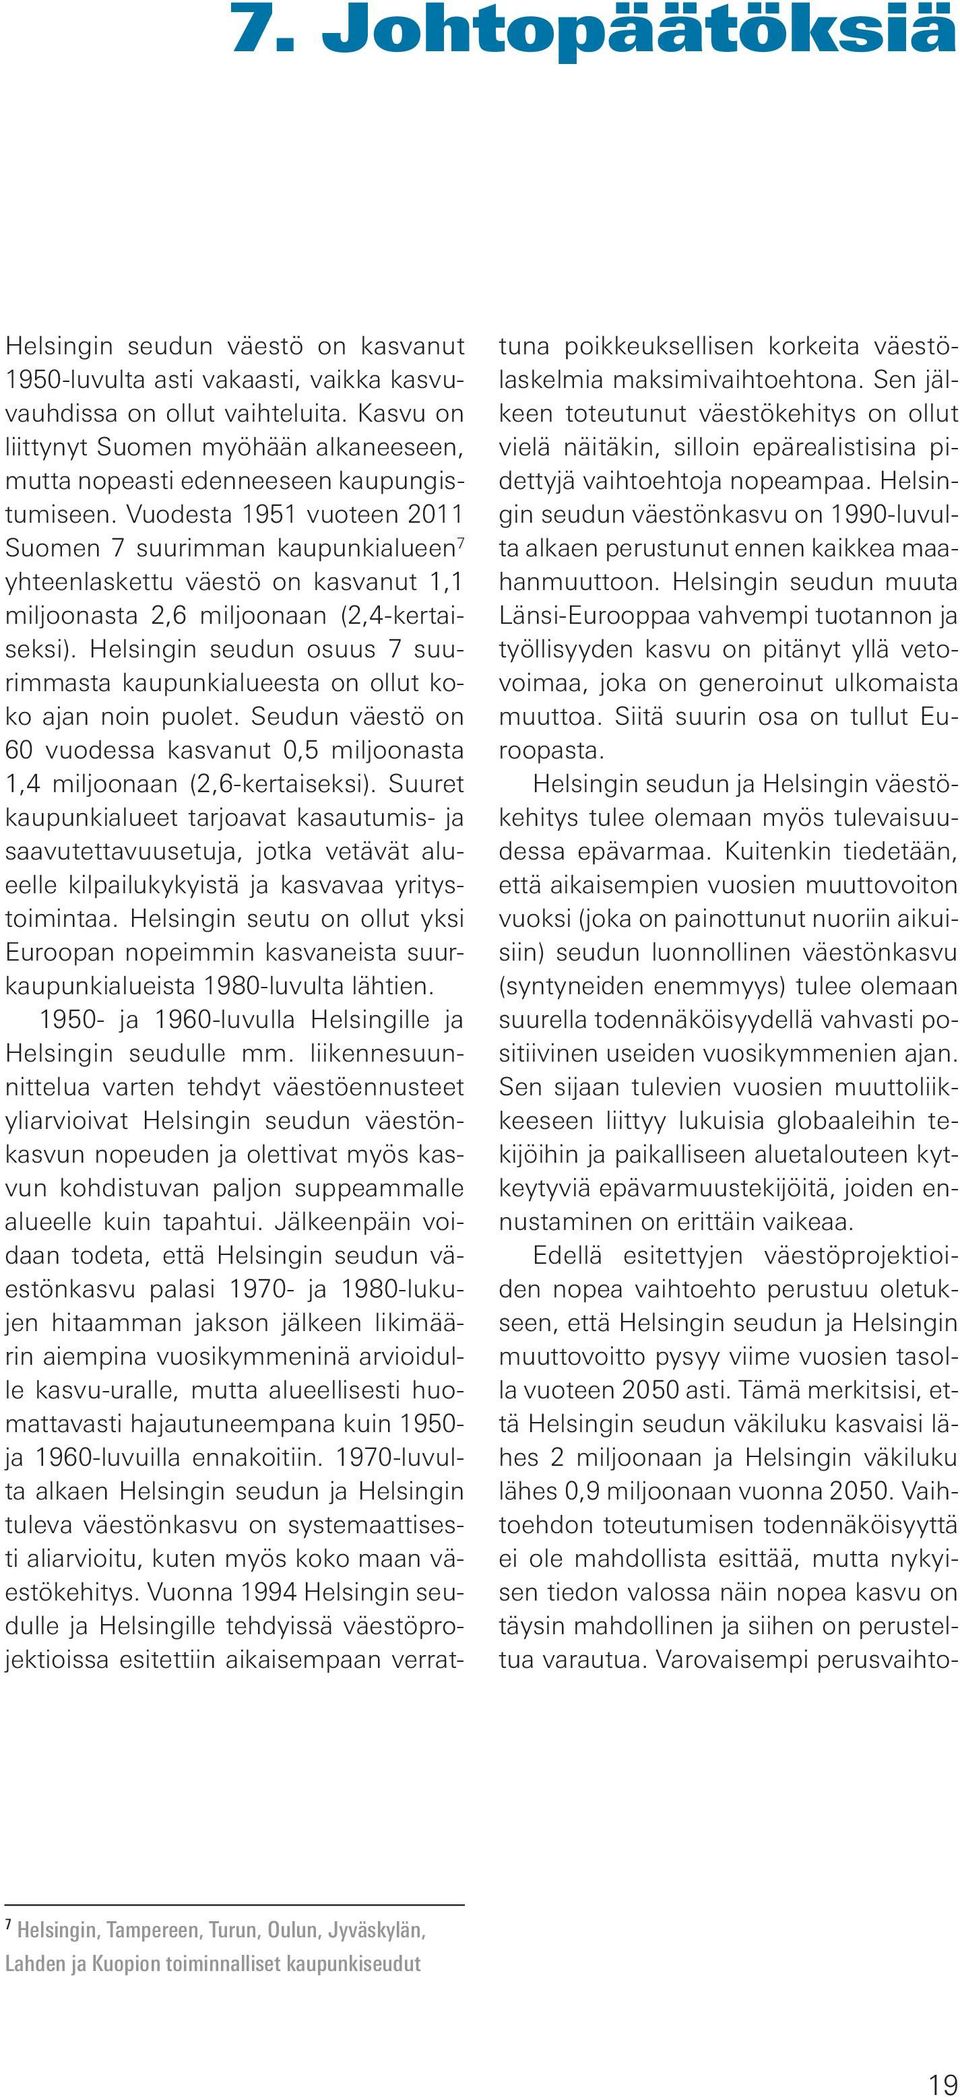 Vuodesta 1951 vuoteen 2011 Suomen 7 suurimman kaupunkialueen 7 yhteenlaskettu väestö on kasvanut 1,1 miljoonasta 2,6 miljoonaan (2,4-kertaiseksi).